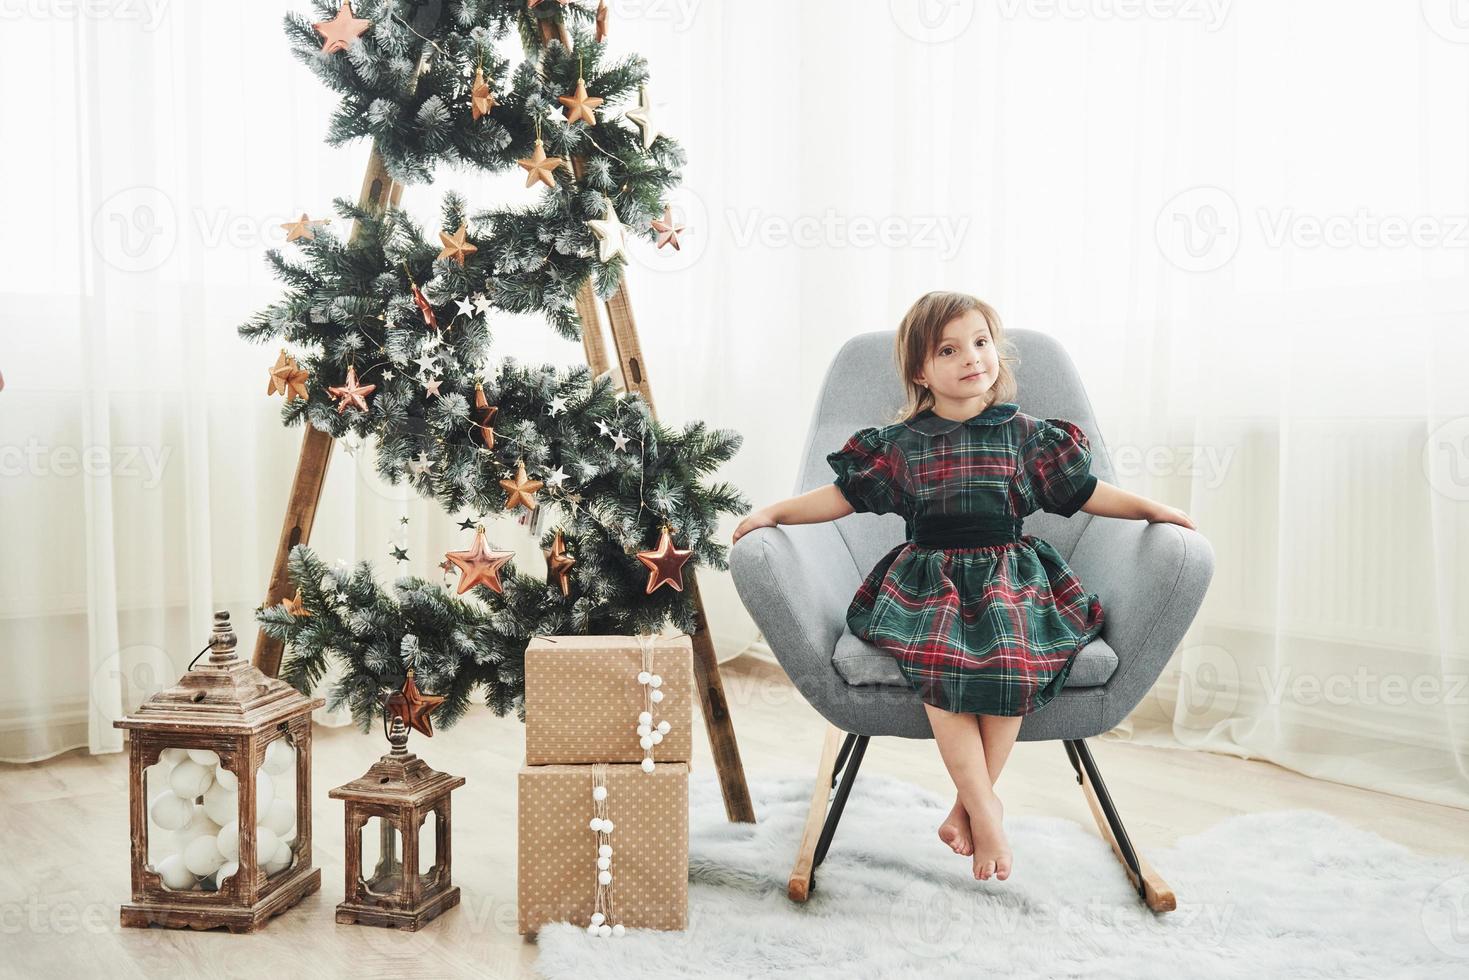 bella stanza bianca. concezione di natale e vacanze. la bambina carina è seduta sulla sedia vicino alla scala decorata con stelle e scatole regalo sul pavimento foto